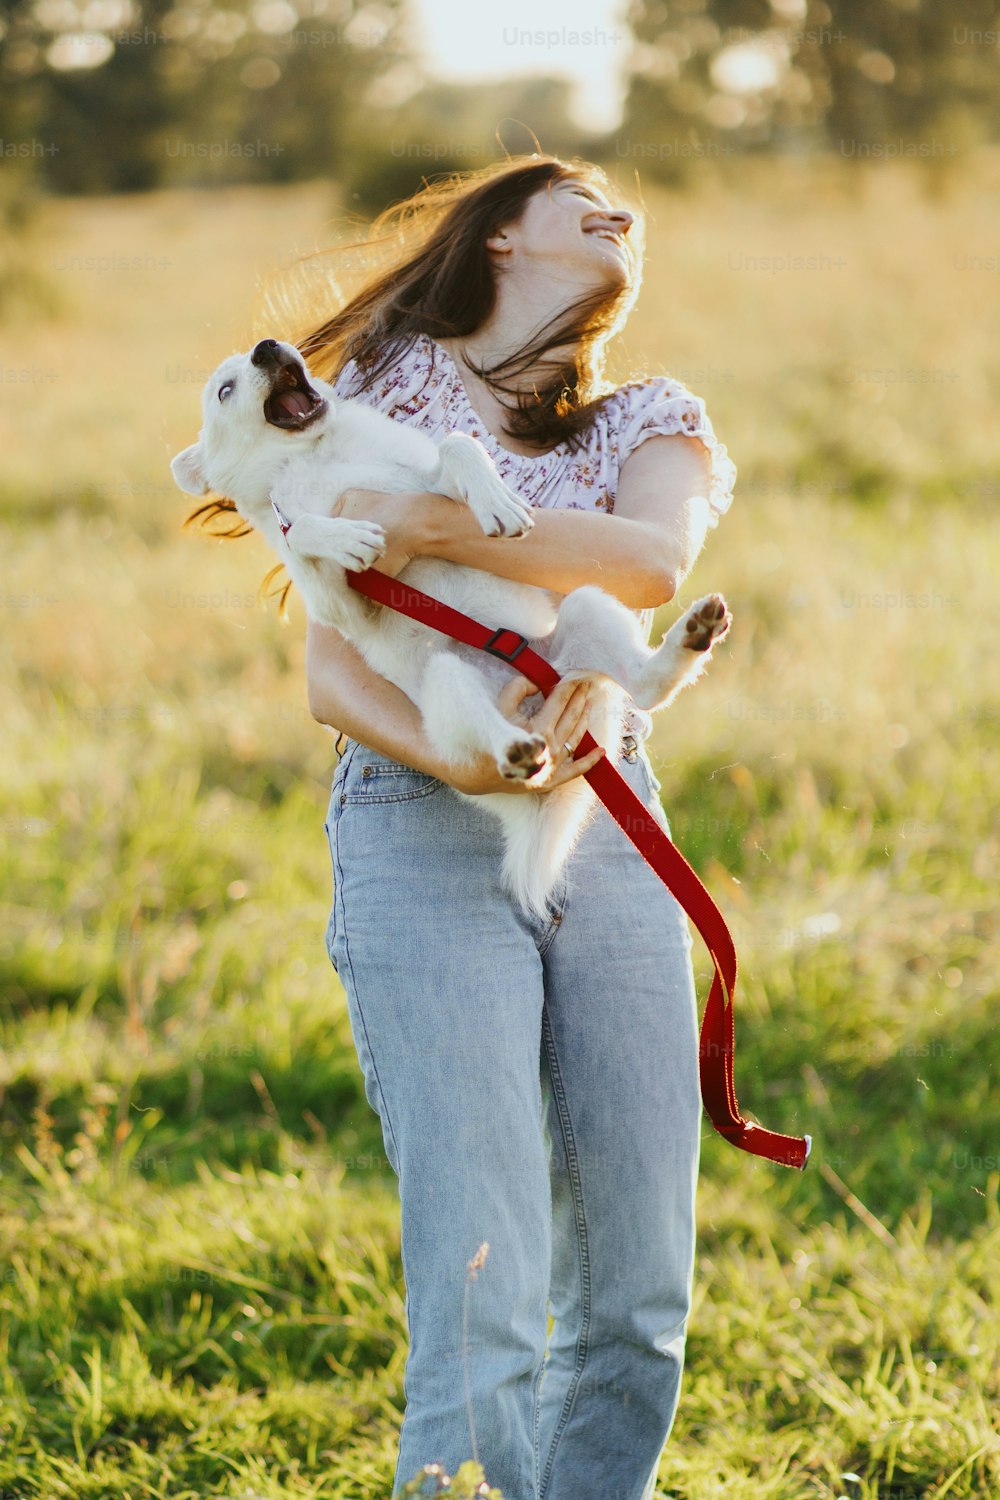 Chica sosteniendo un cachorro juguetón adorable y esponjoso, momento hilarante. Jugando con el perrito. Mujer joven feliz sosteniendo un cachorro blanco divertido en la cálida luz del atardecer en el prado de verano.